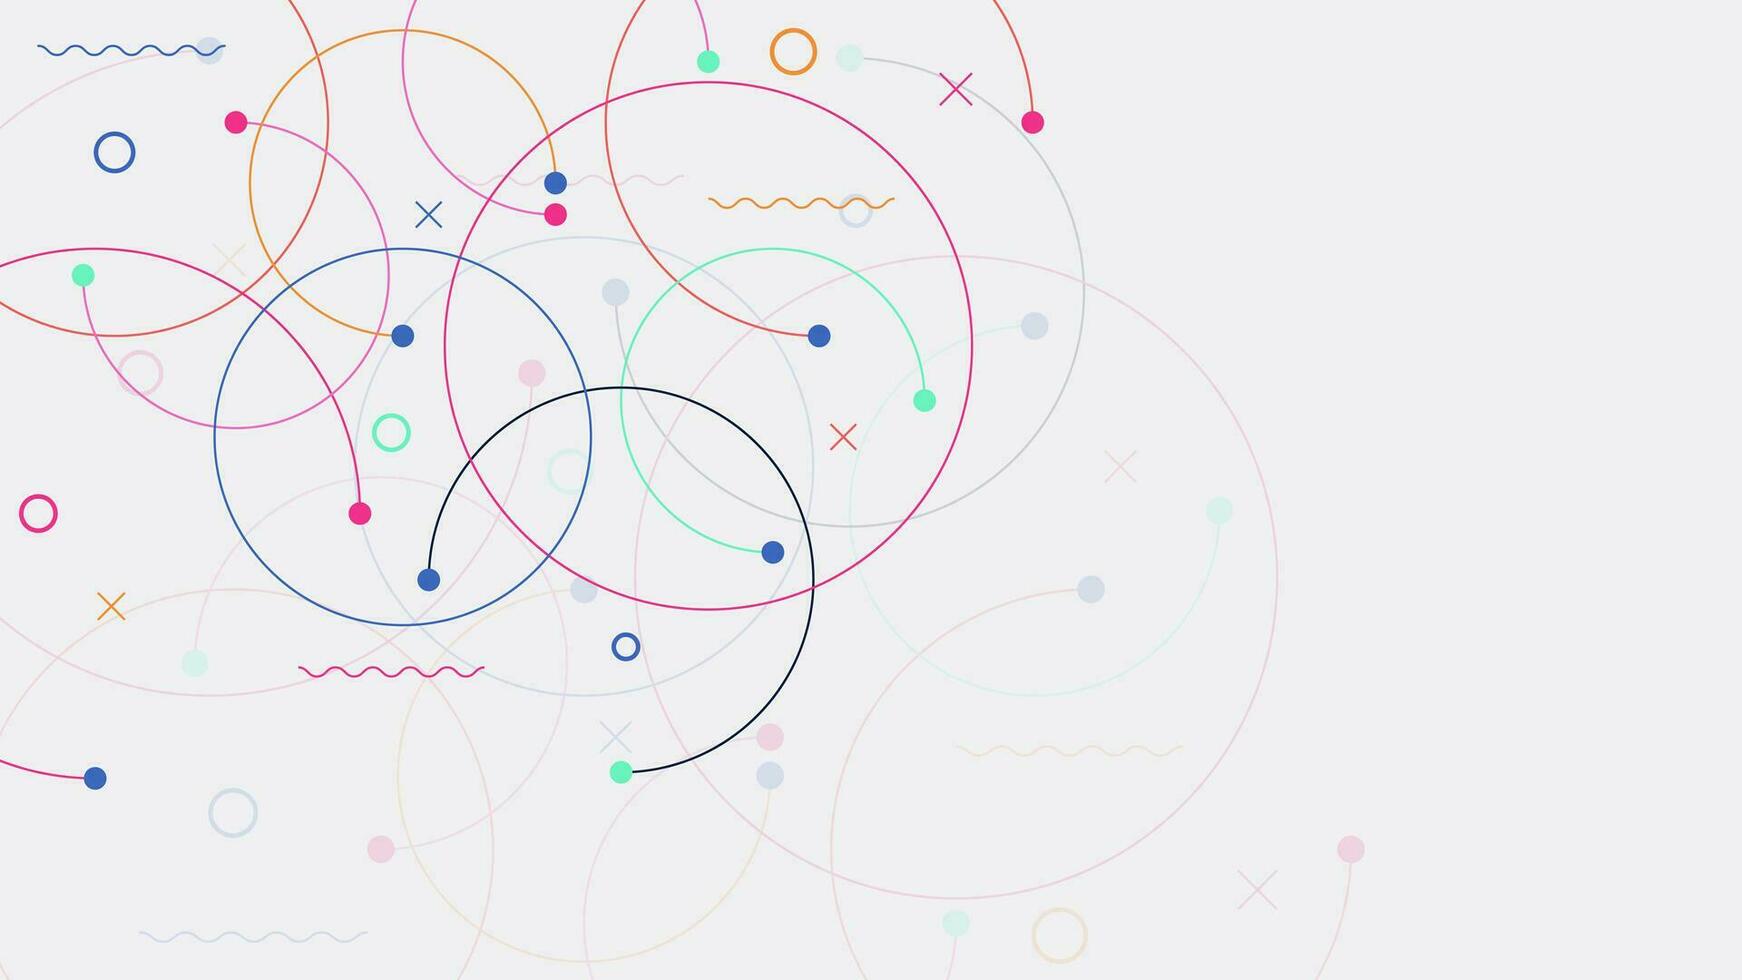 plexus cercles lien pour global communication, gros Les données visualisation, science et La technologie Contexte conception. vecteur illustration.